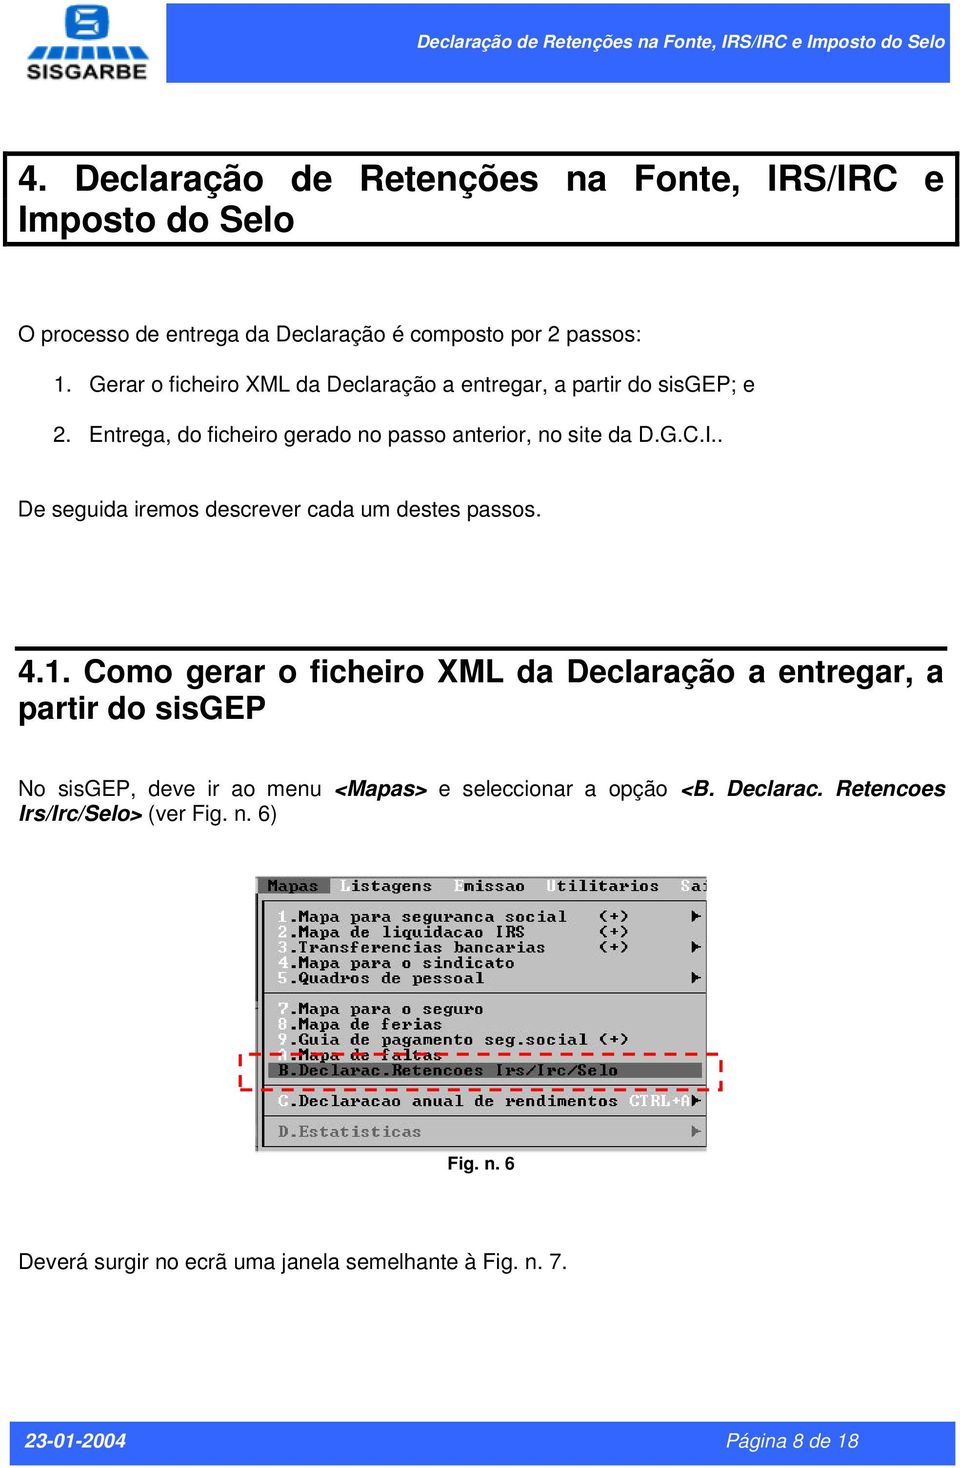 Gerar o ficheiro XML da Declaração a entregar, a partir do sisgep; e 2. Entrega, do ficheiro gerado no passo anterior, no site da D.G.C.I.